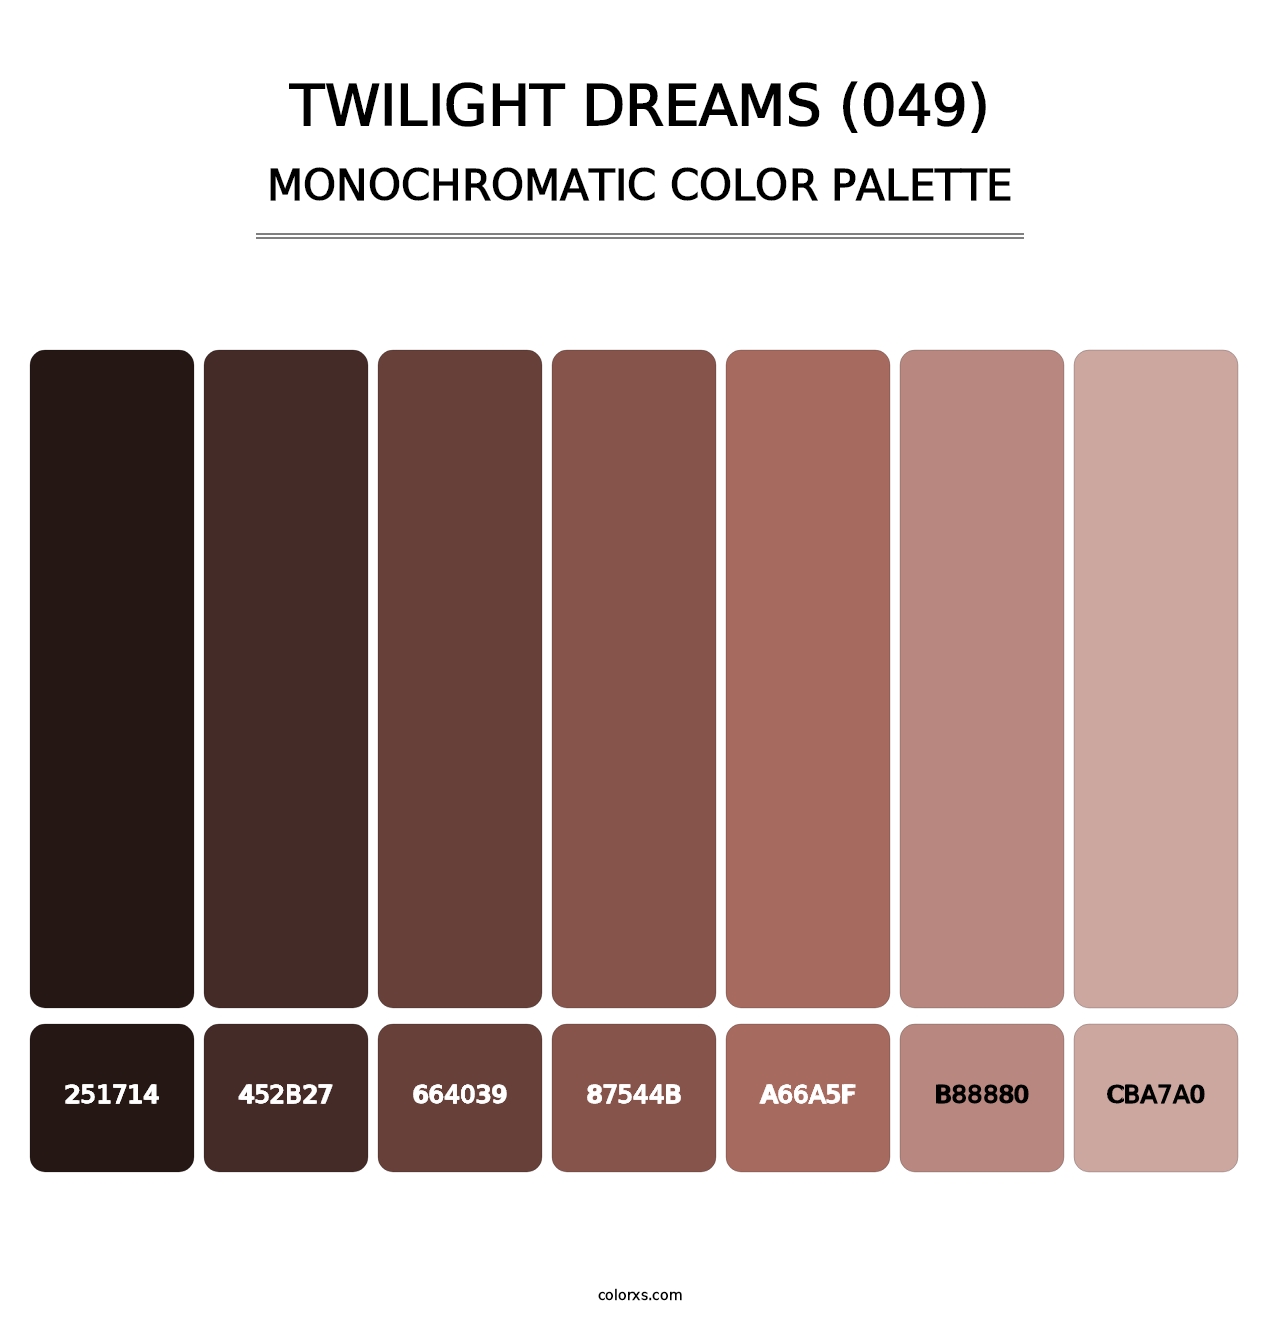 Twilight Dreams (049) - Monochromatic Color Palette